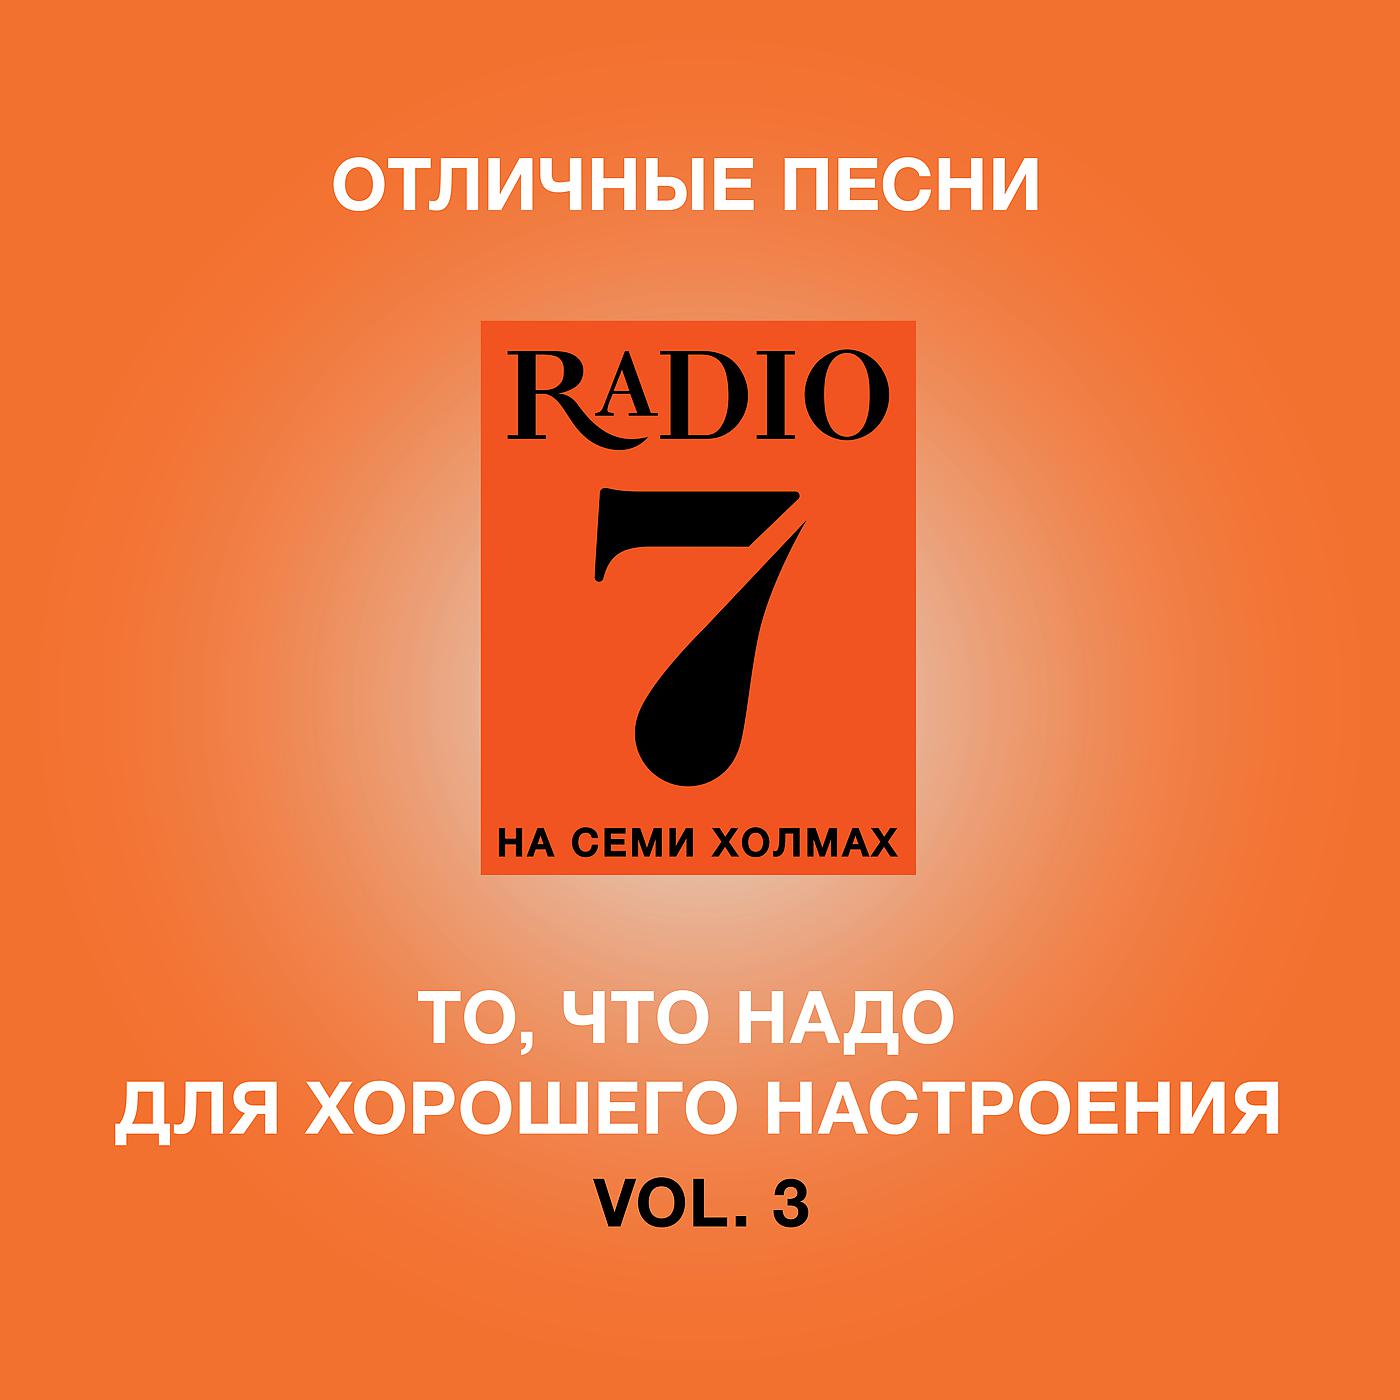 7 холмах прямой эфир. Радио 7. Радио 7 на семи холмах. Радио 7 логотип. Радио 7 на семи холмах логотип.